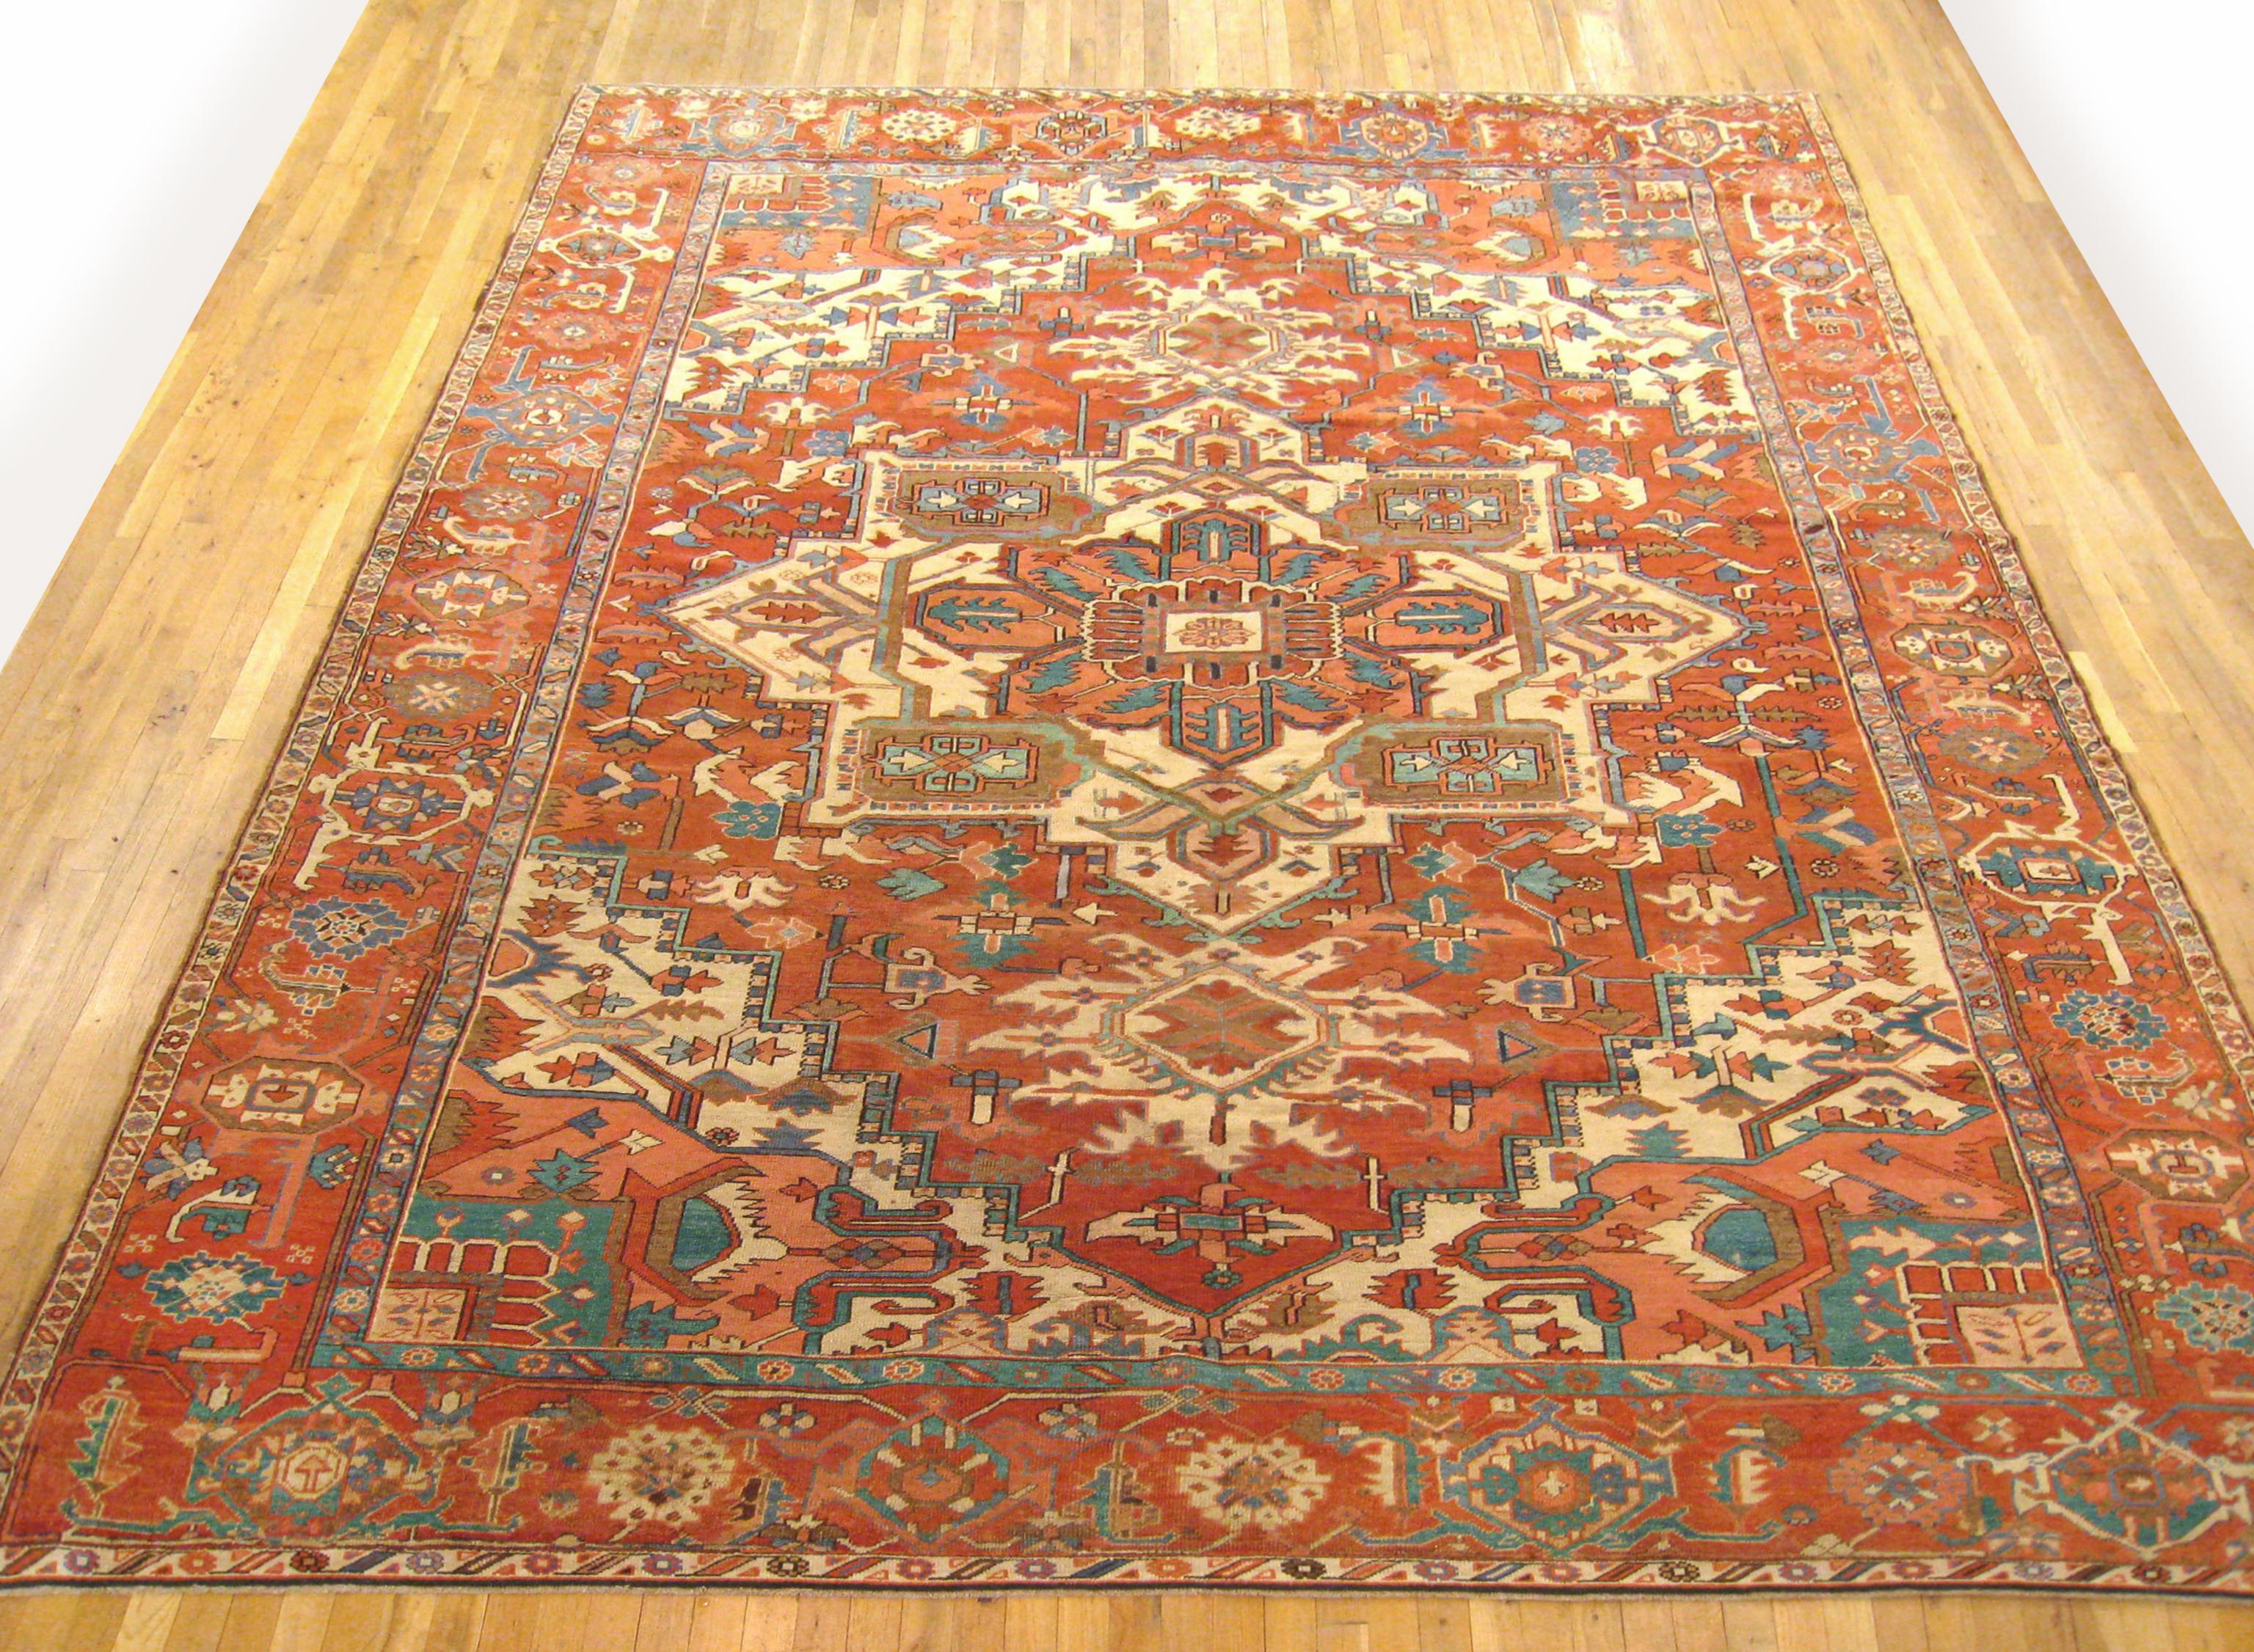 Antique Persian Serapi Oriental rug, in Room size
An antique Persian Serapi oriental rug, size 13'3